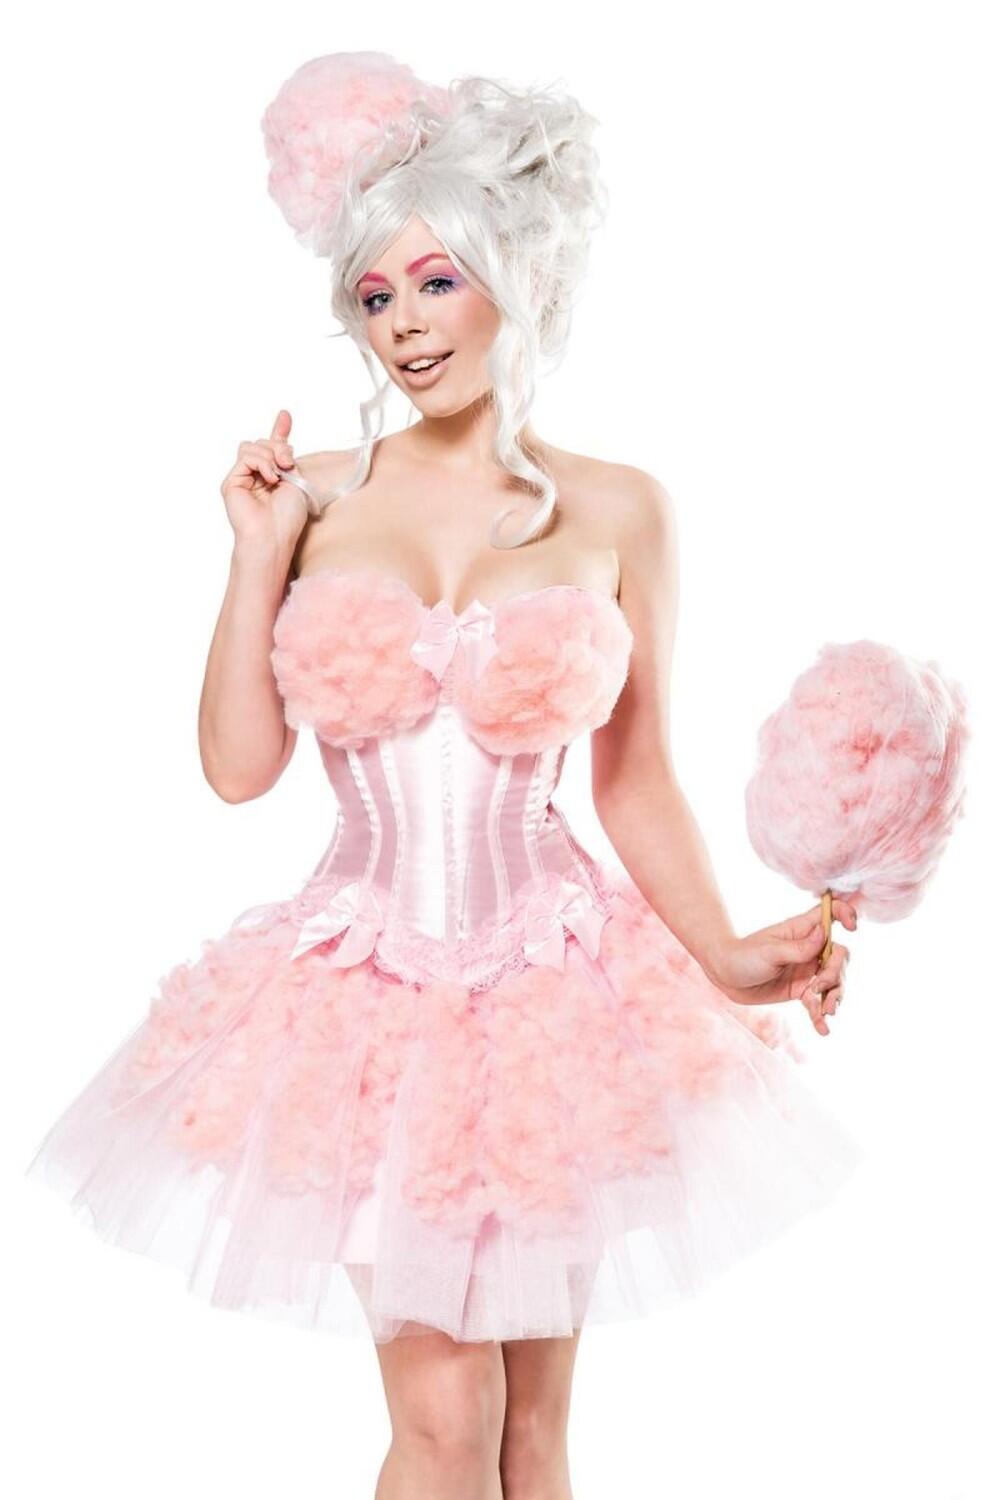 ATX 80130 Cotton Candy Girl Kostüm Karneval Zuckerwatte Zirkus 36 38 40 42 44